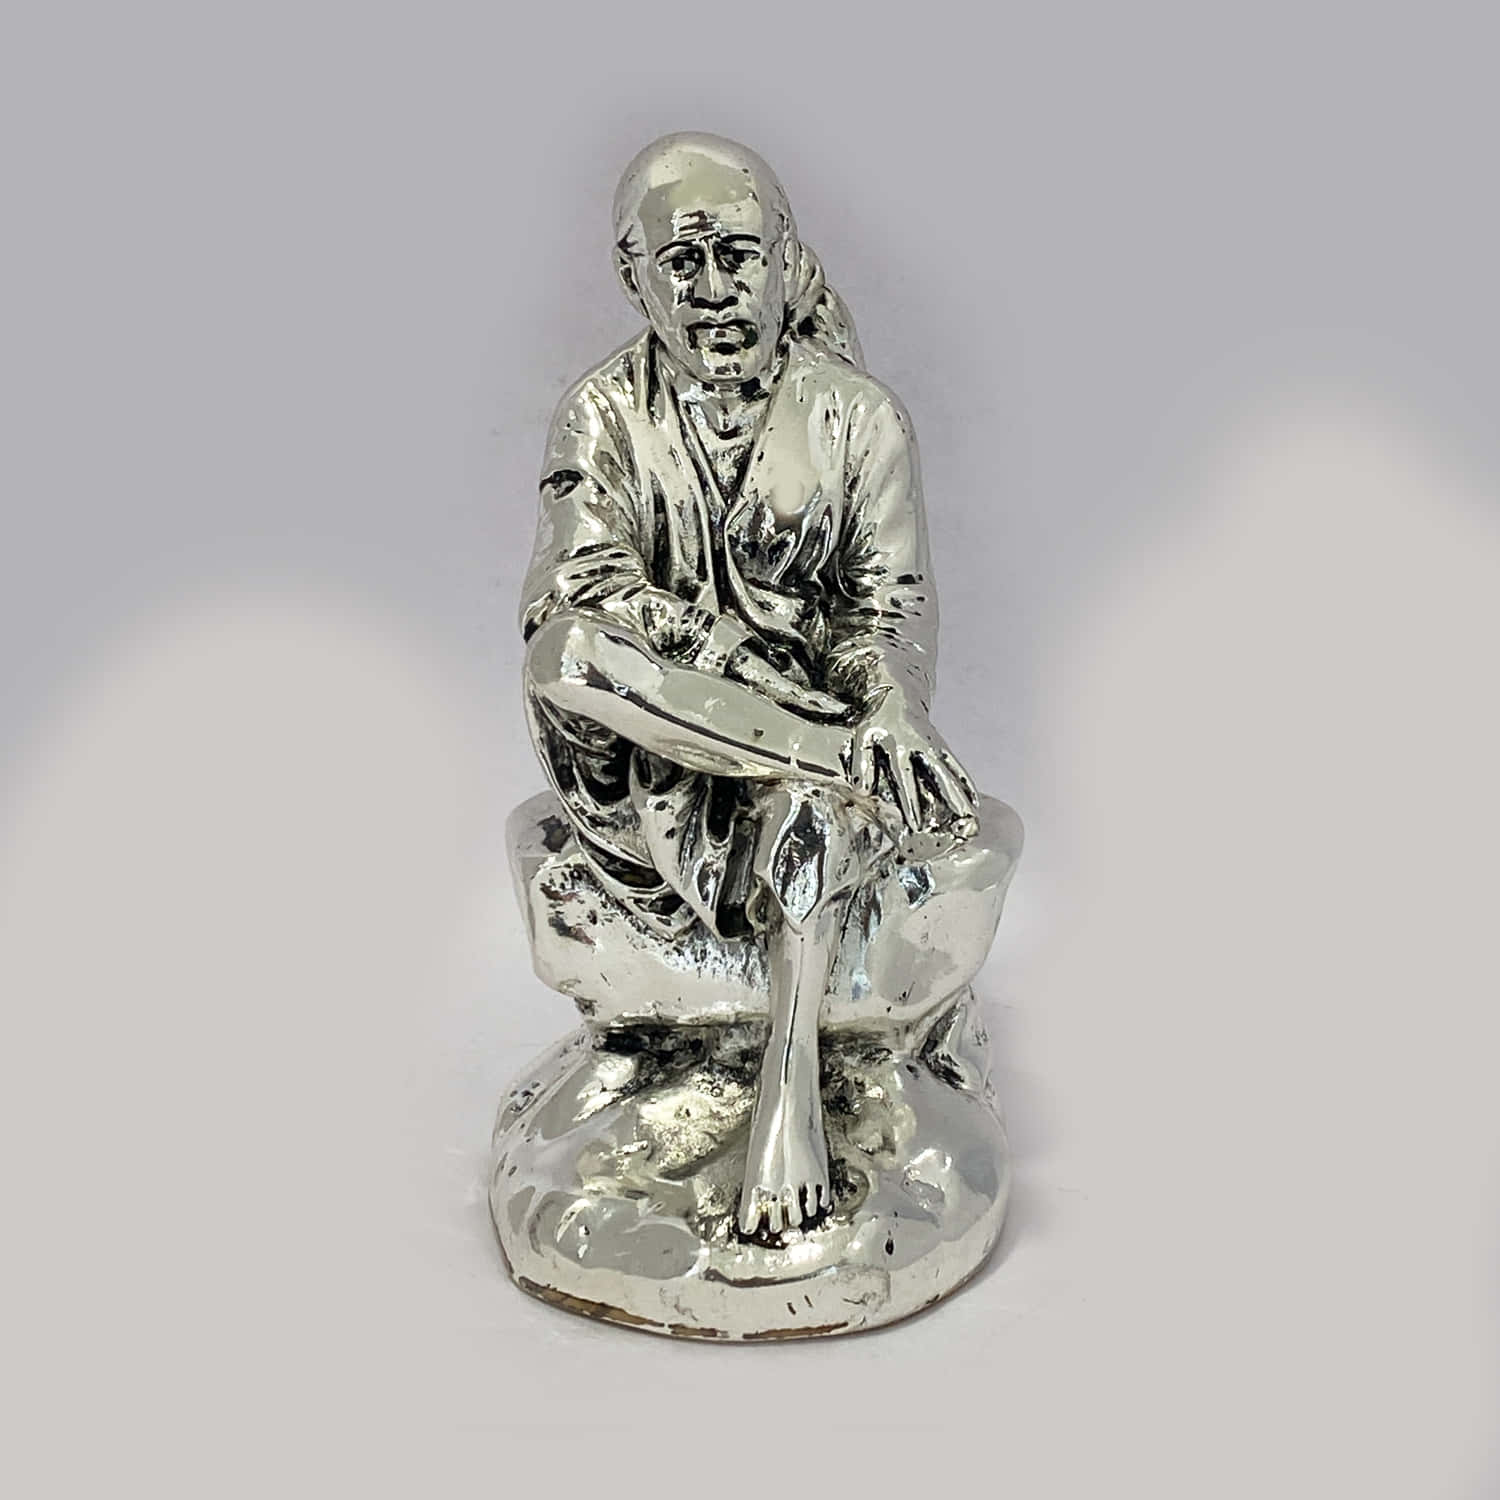 Sai Baba Shiny Silver Figurine Picture